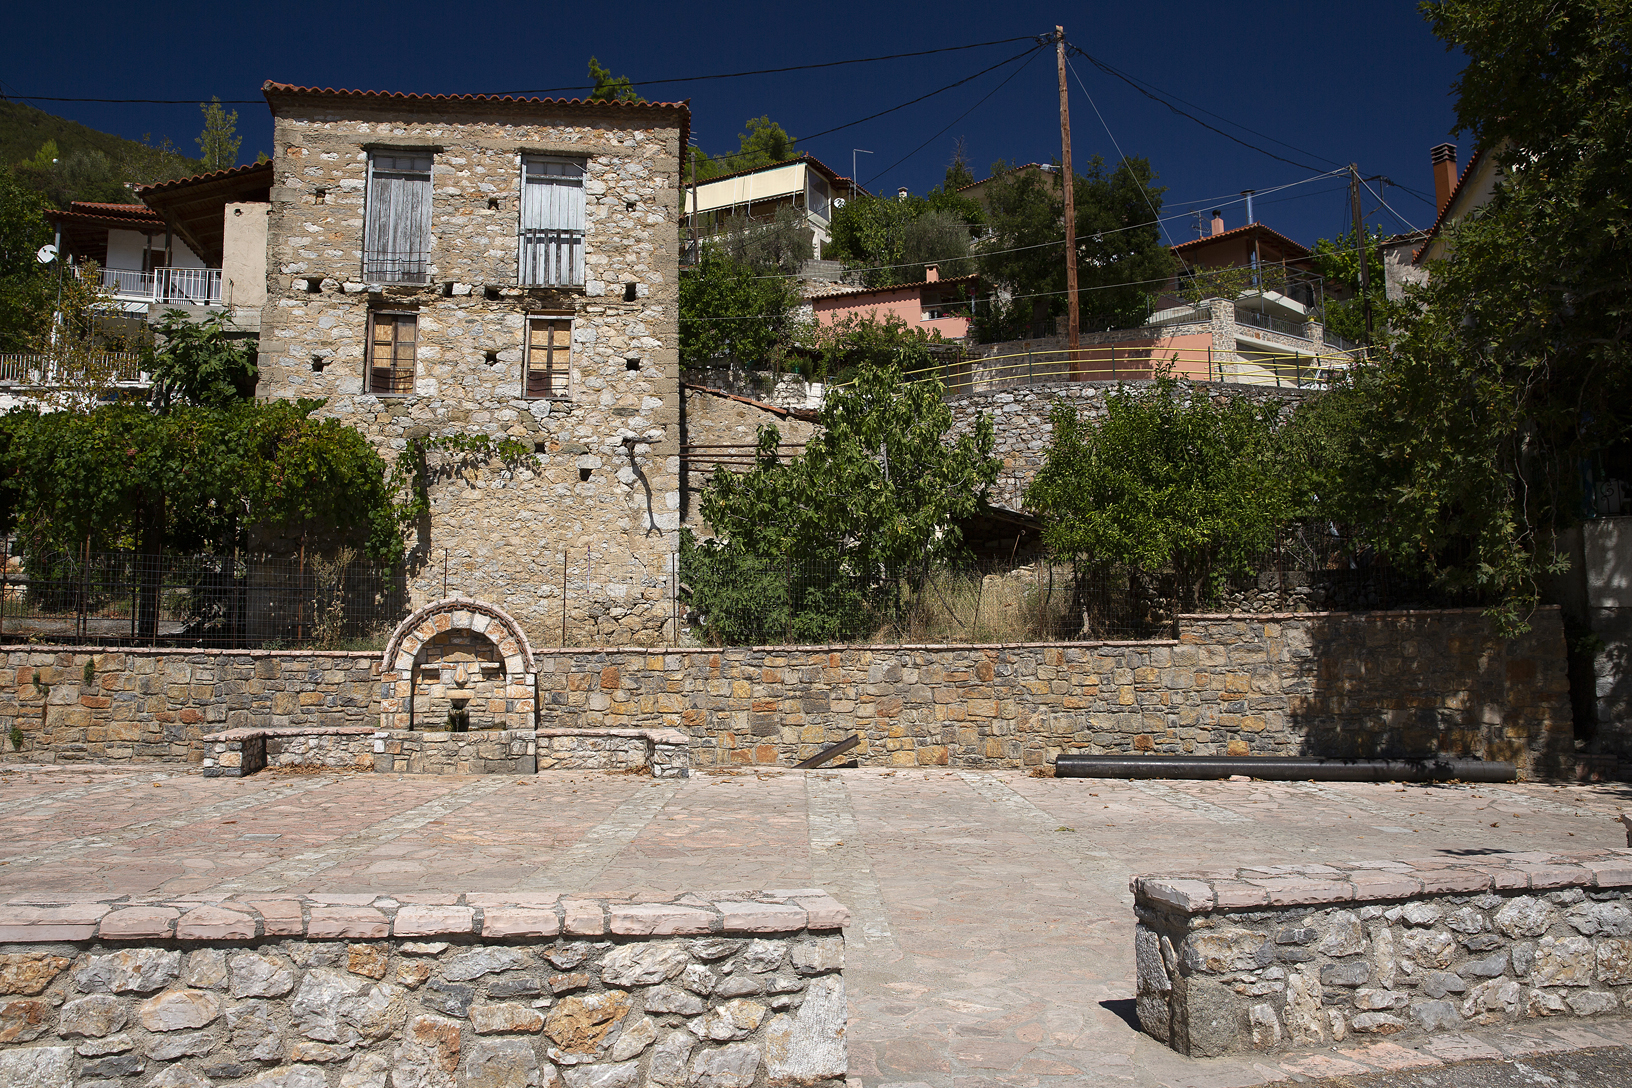 Πλατεία, χωριό Παρθένι. Φωτογραφία: ©Βασίλης Συκάς, για τον Δήμο Κύμης-Αλιβερίου